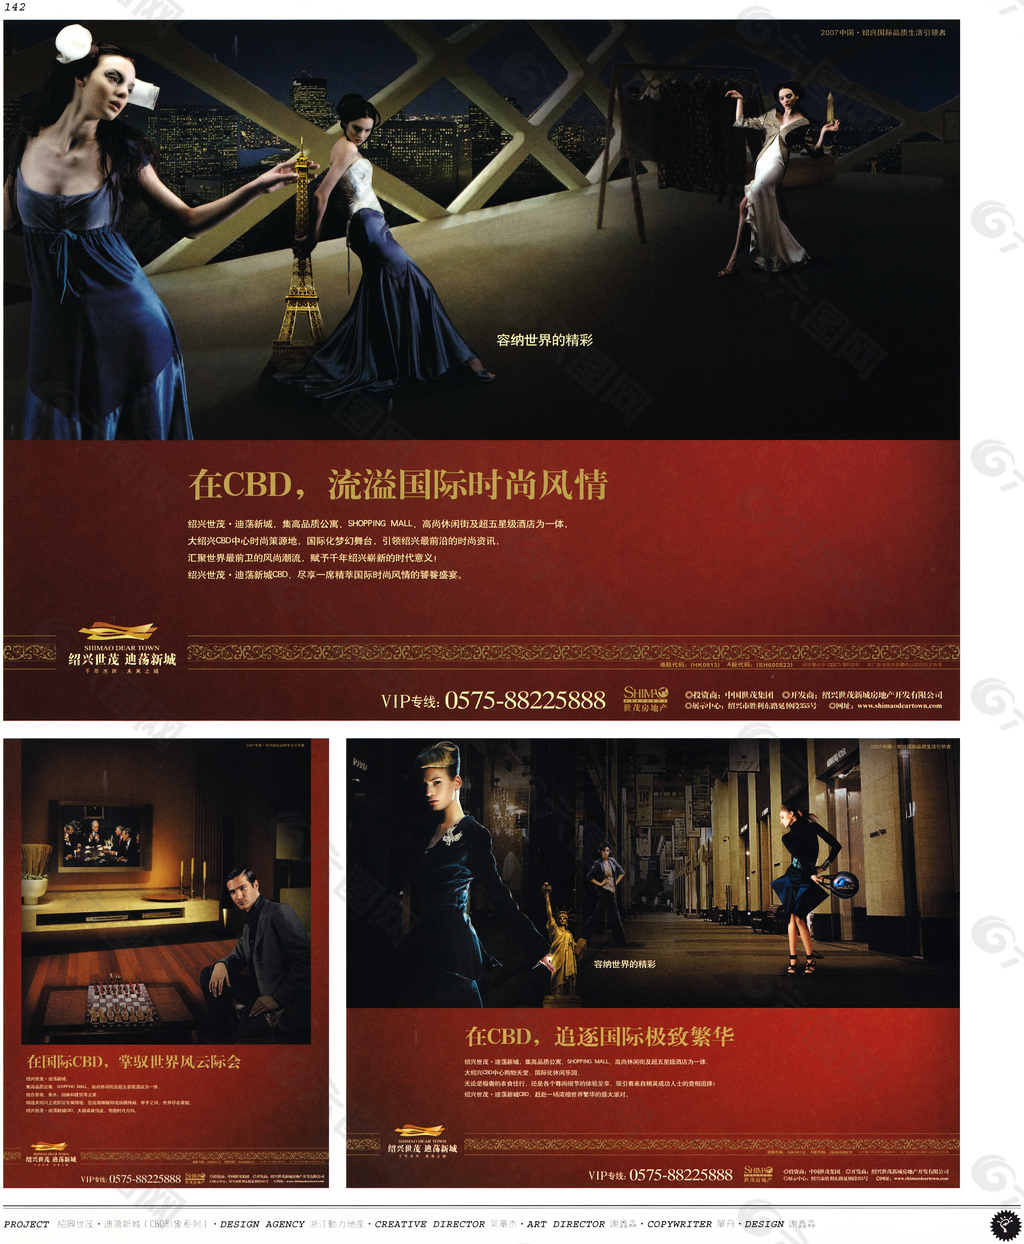 中国房地产广告年鉴 第一册 创意设计_0137